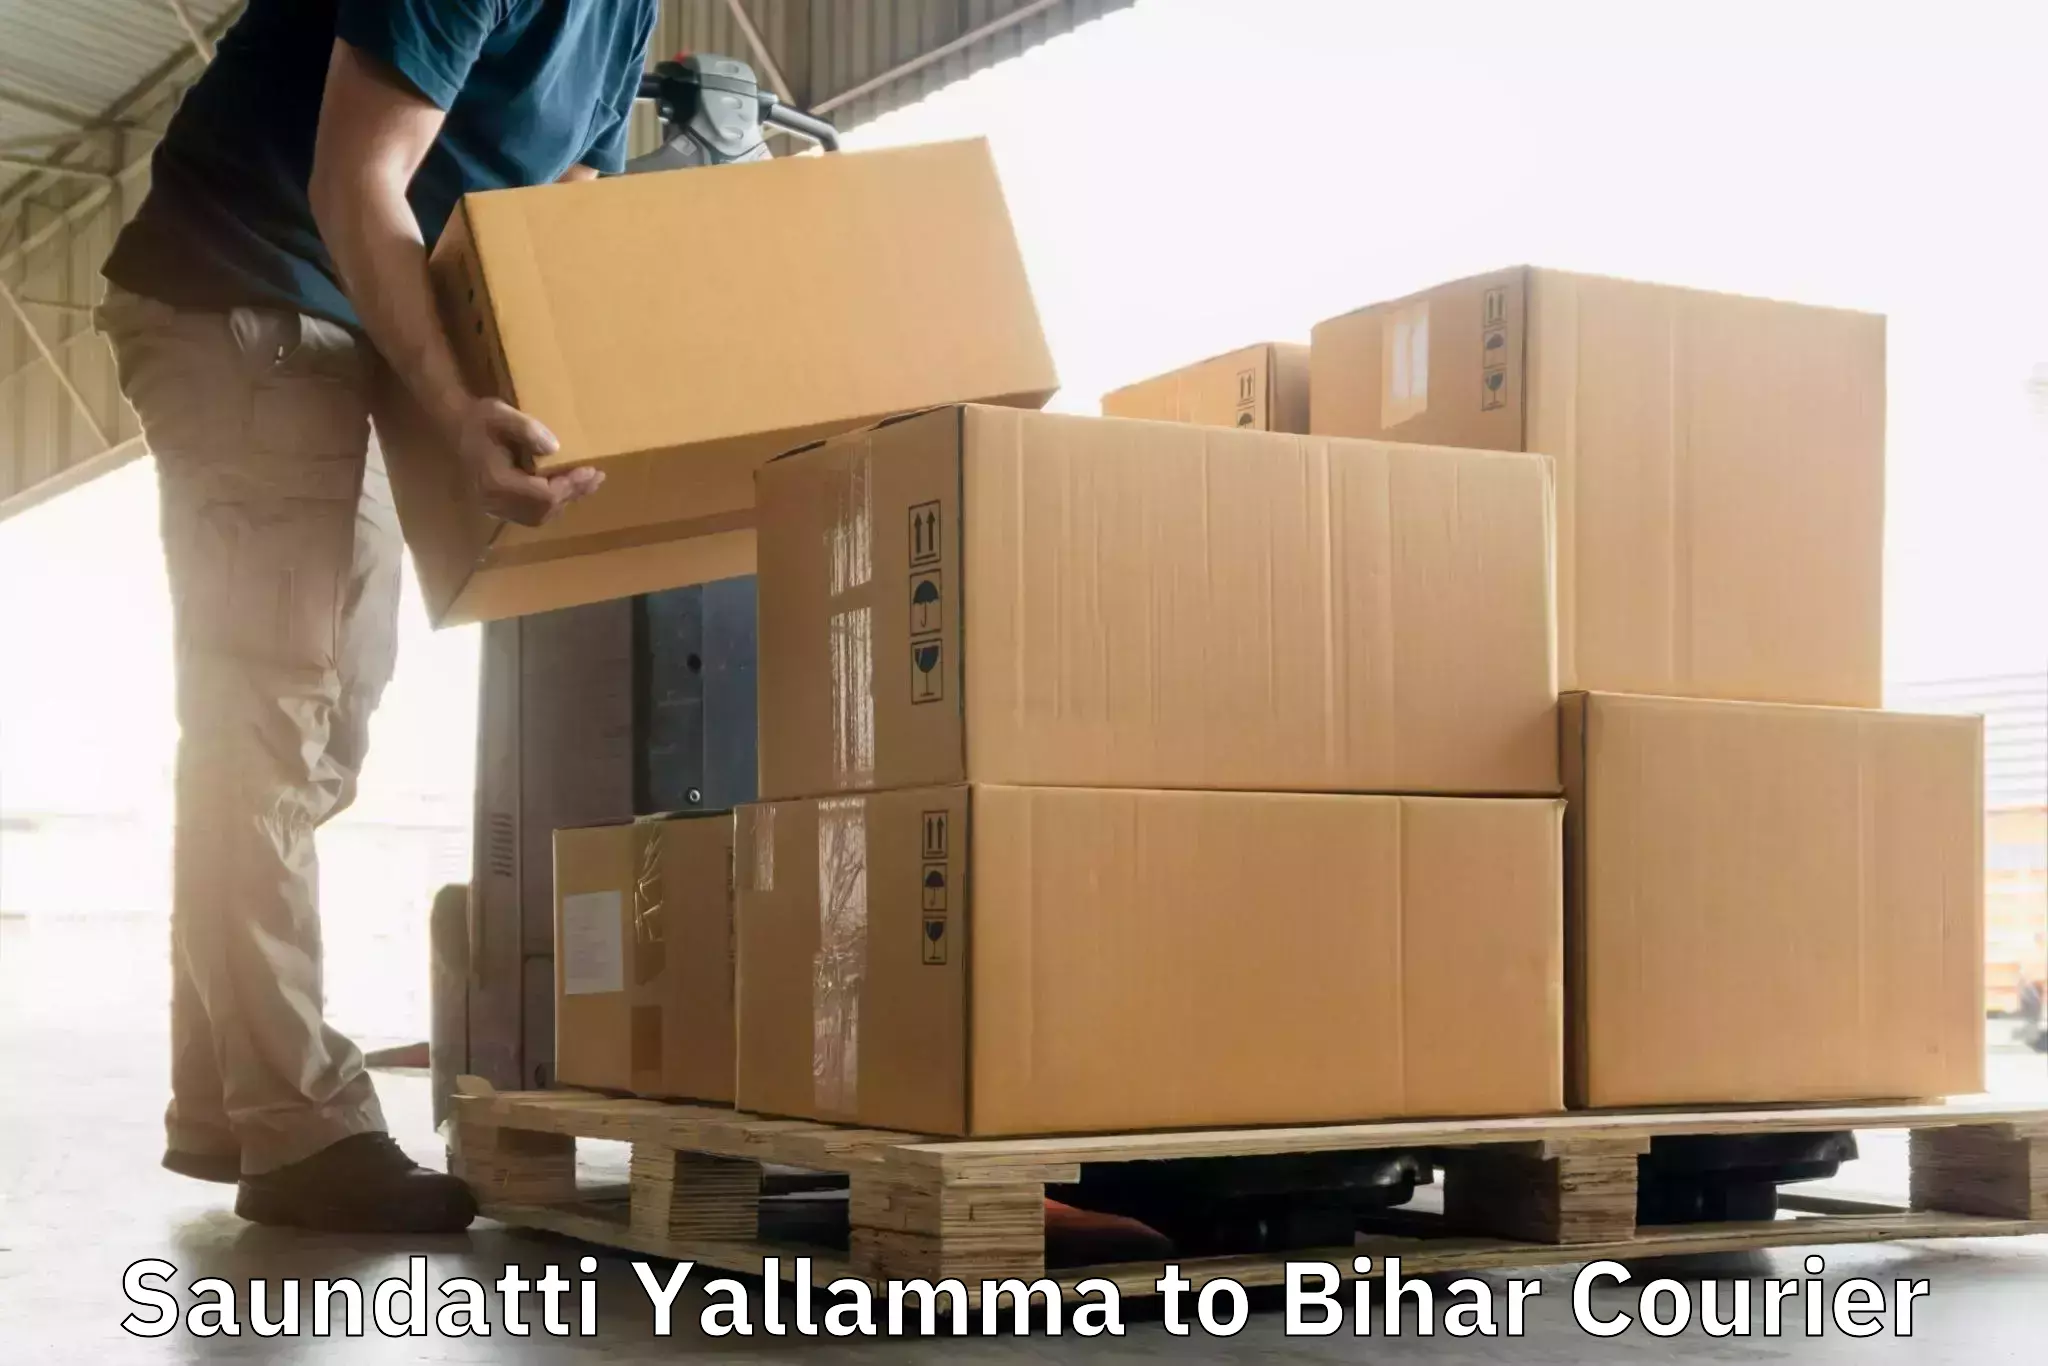 Courier rate comparison Saundatti Yallamma to Bihar